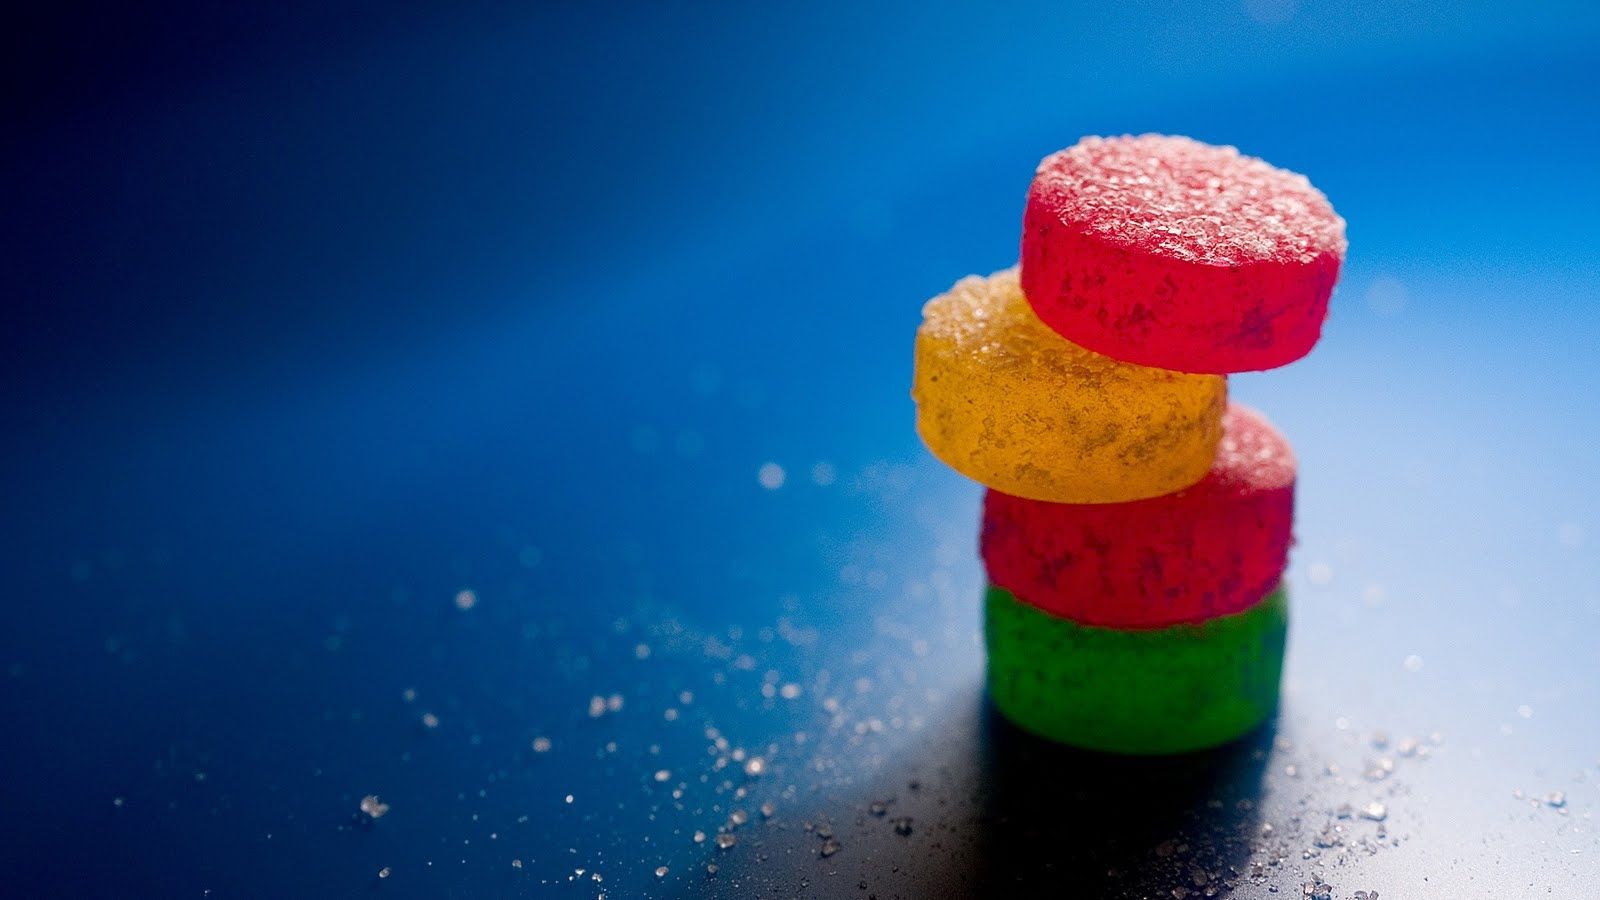 Cute Sweets Desktop Wallpapers - PixelsTalk.Net